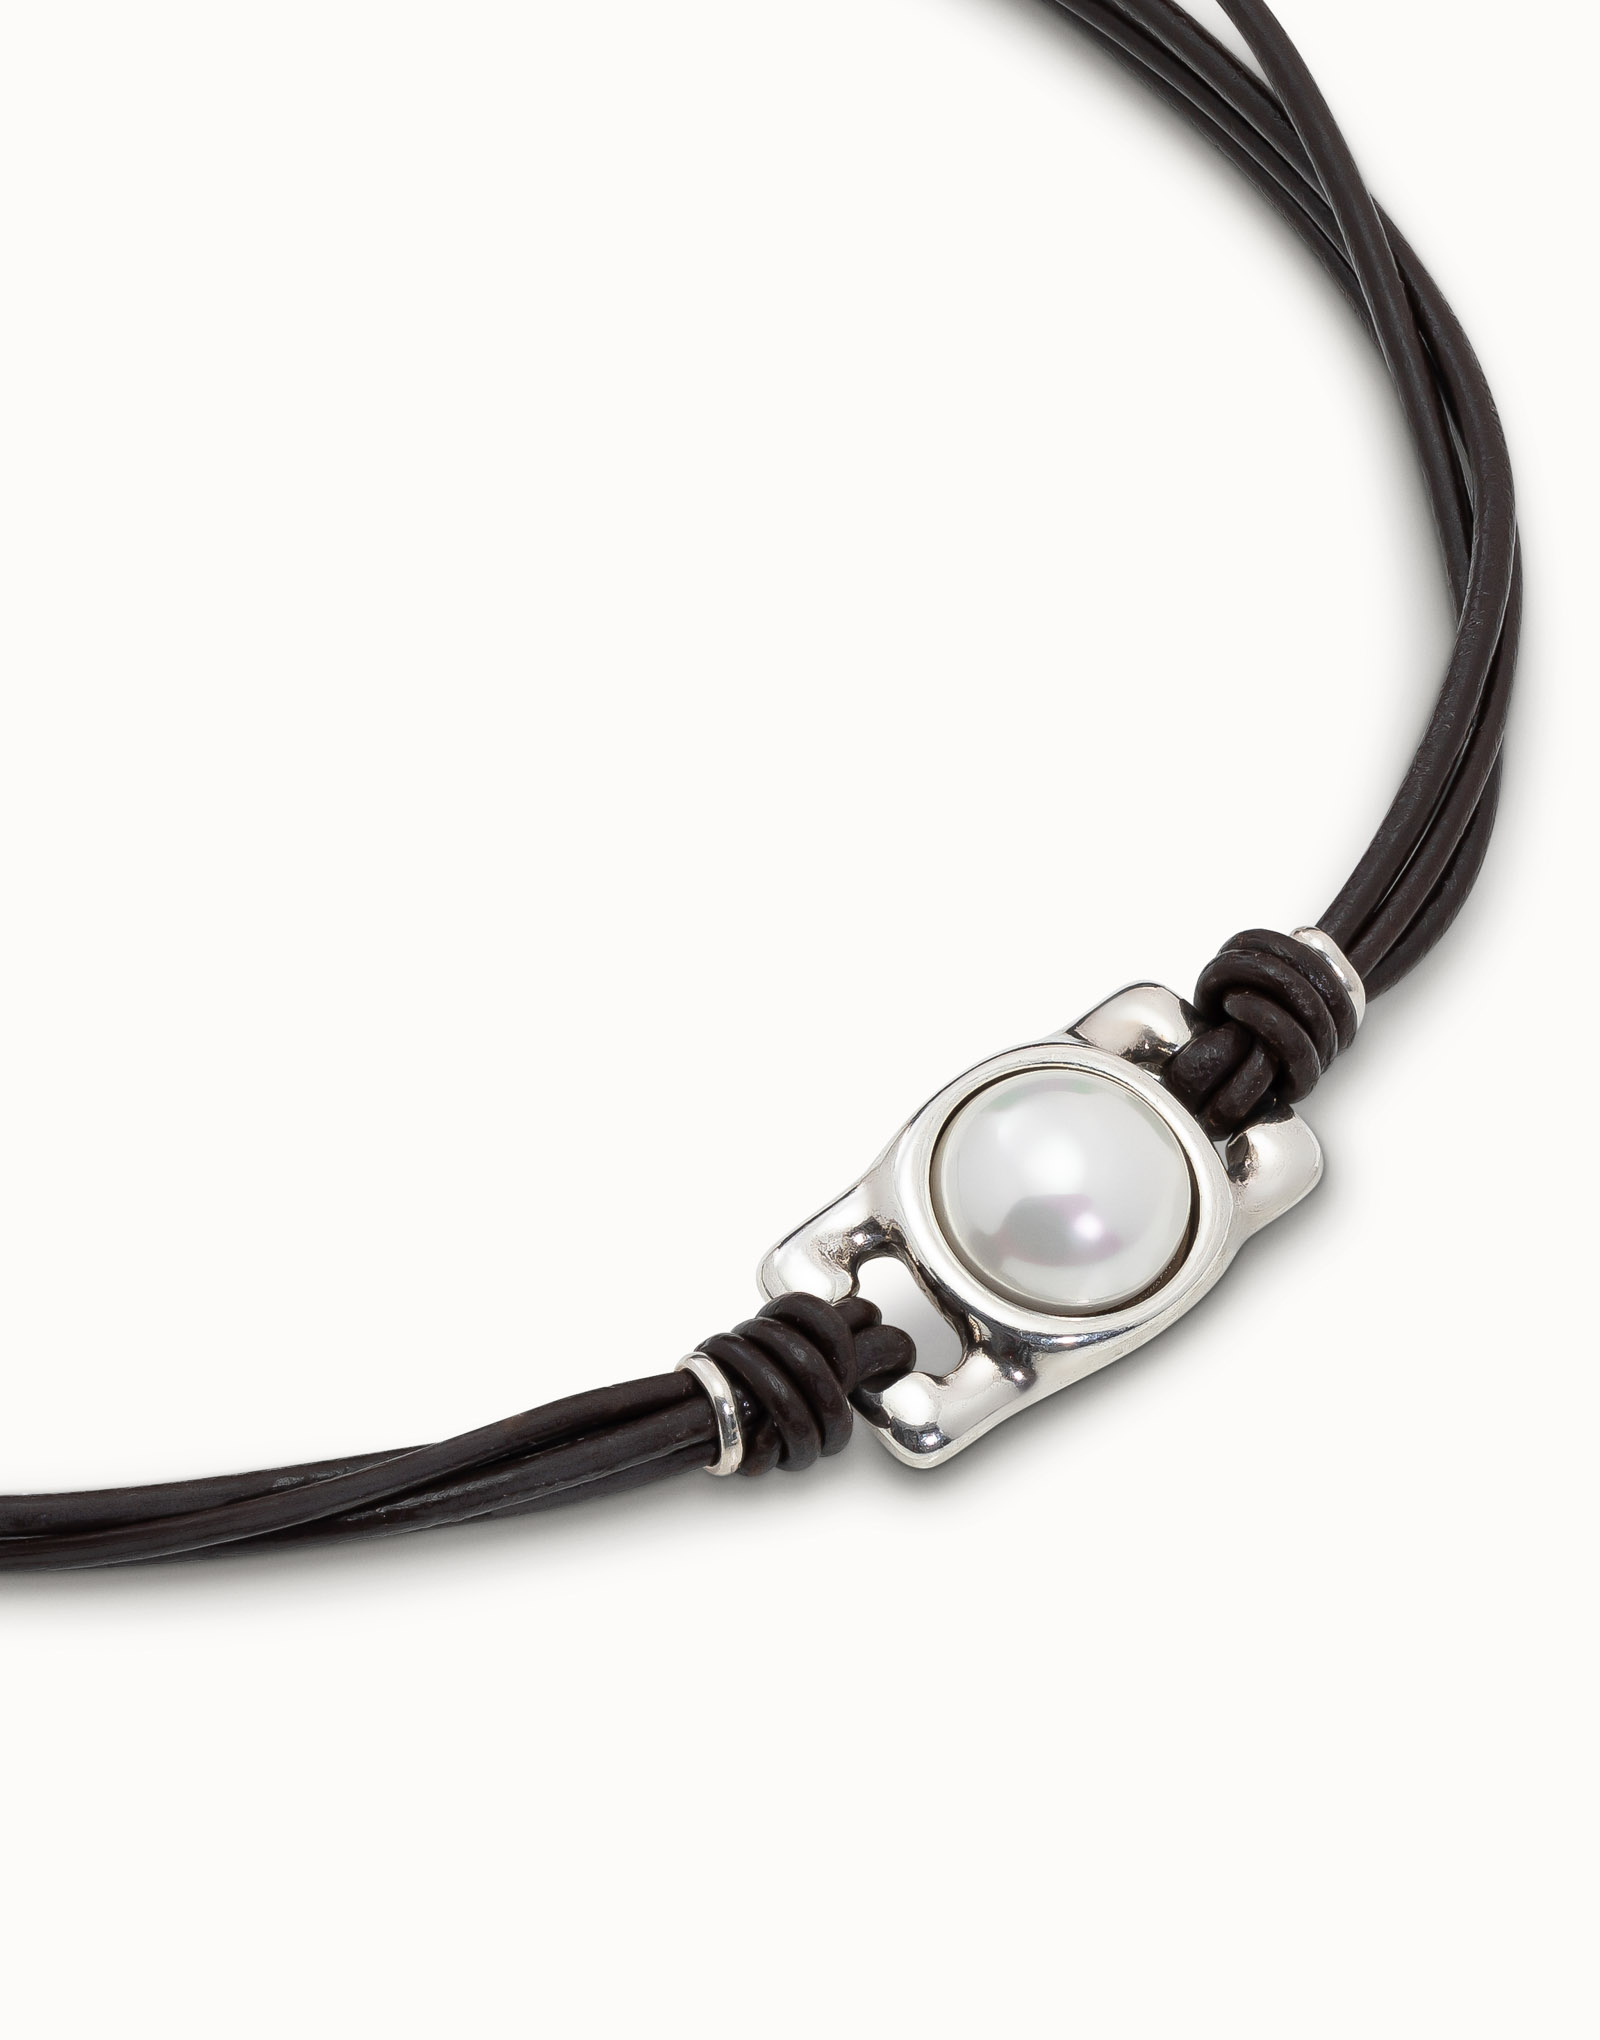 Collana corta a quattro strisce di cuoio e perlina centrale con perla, Argent, large image number null